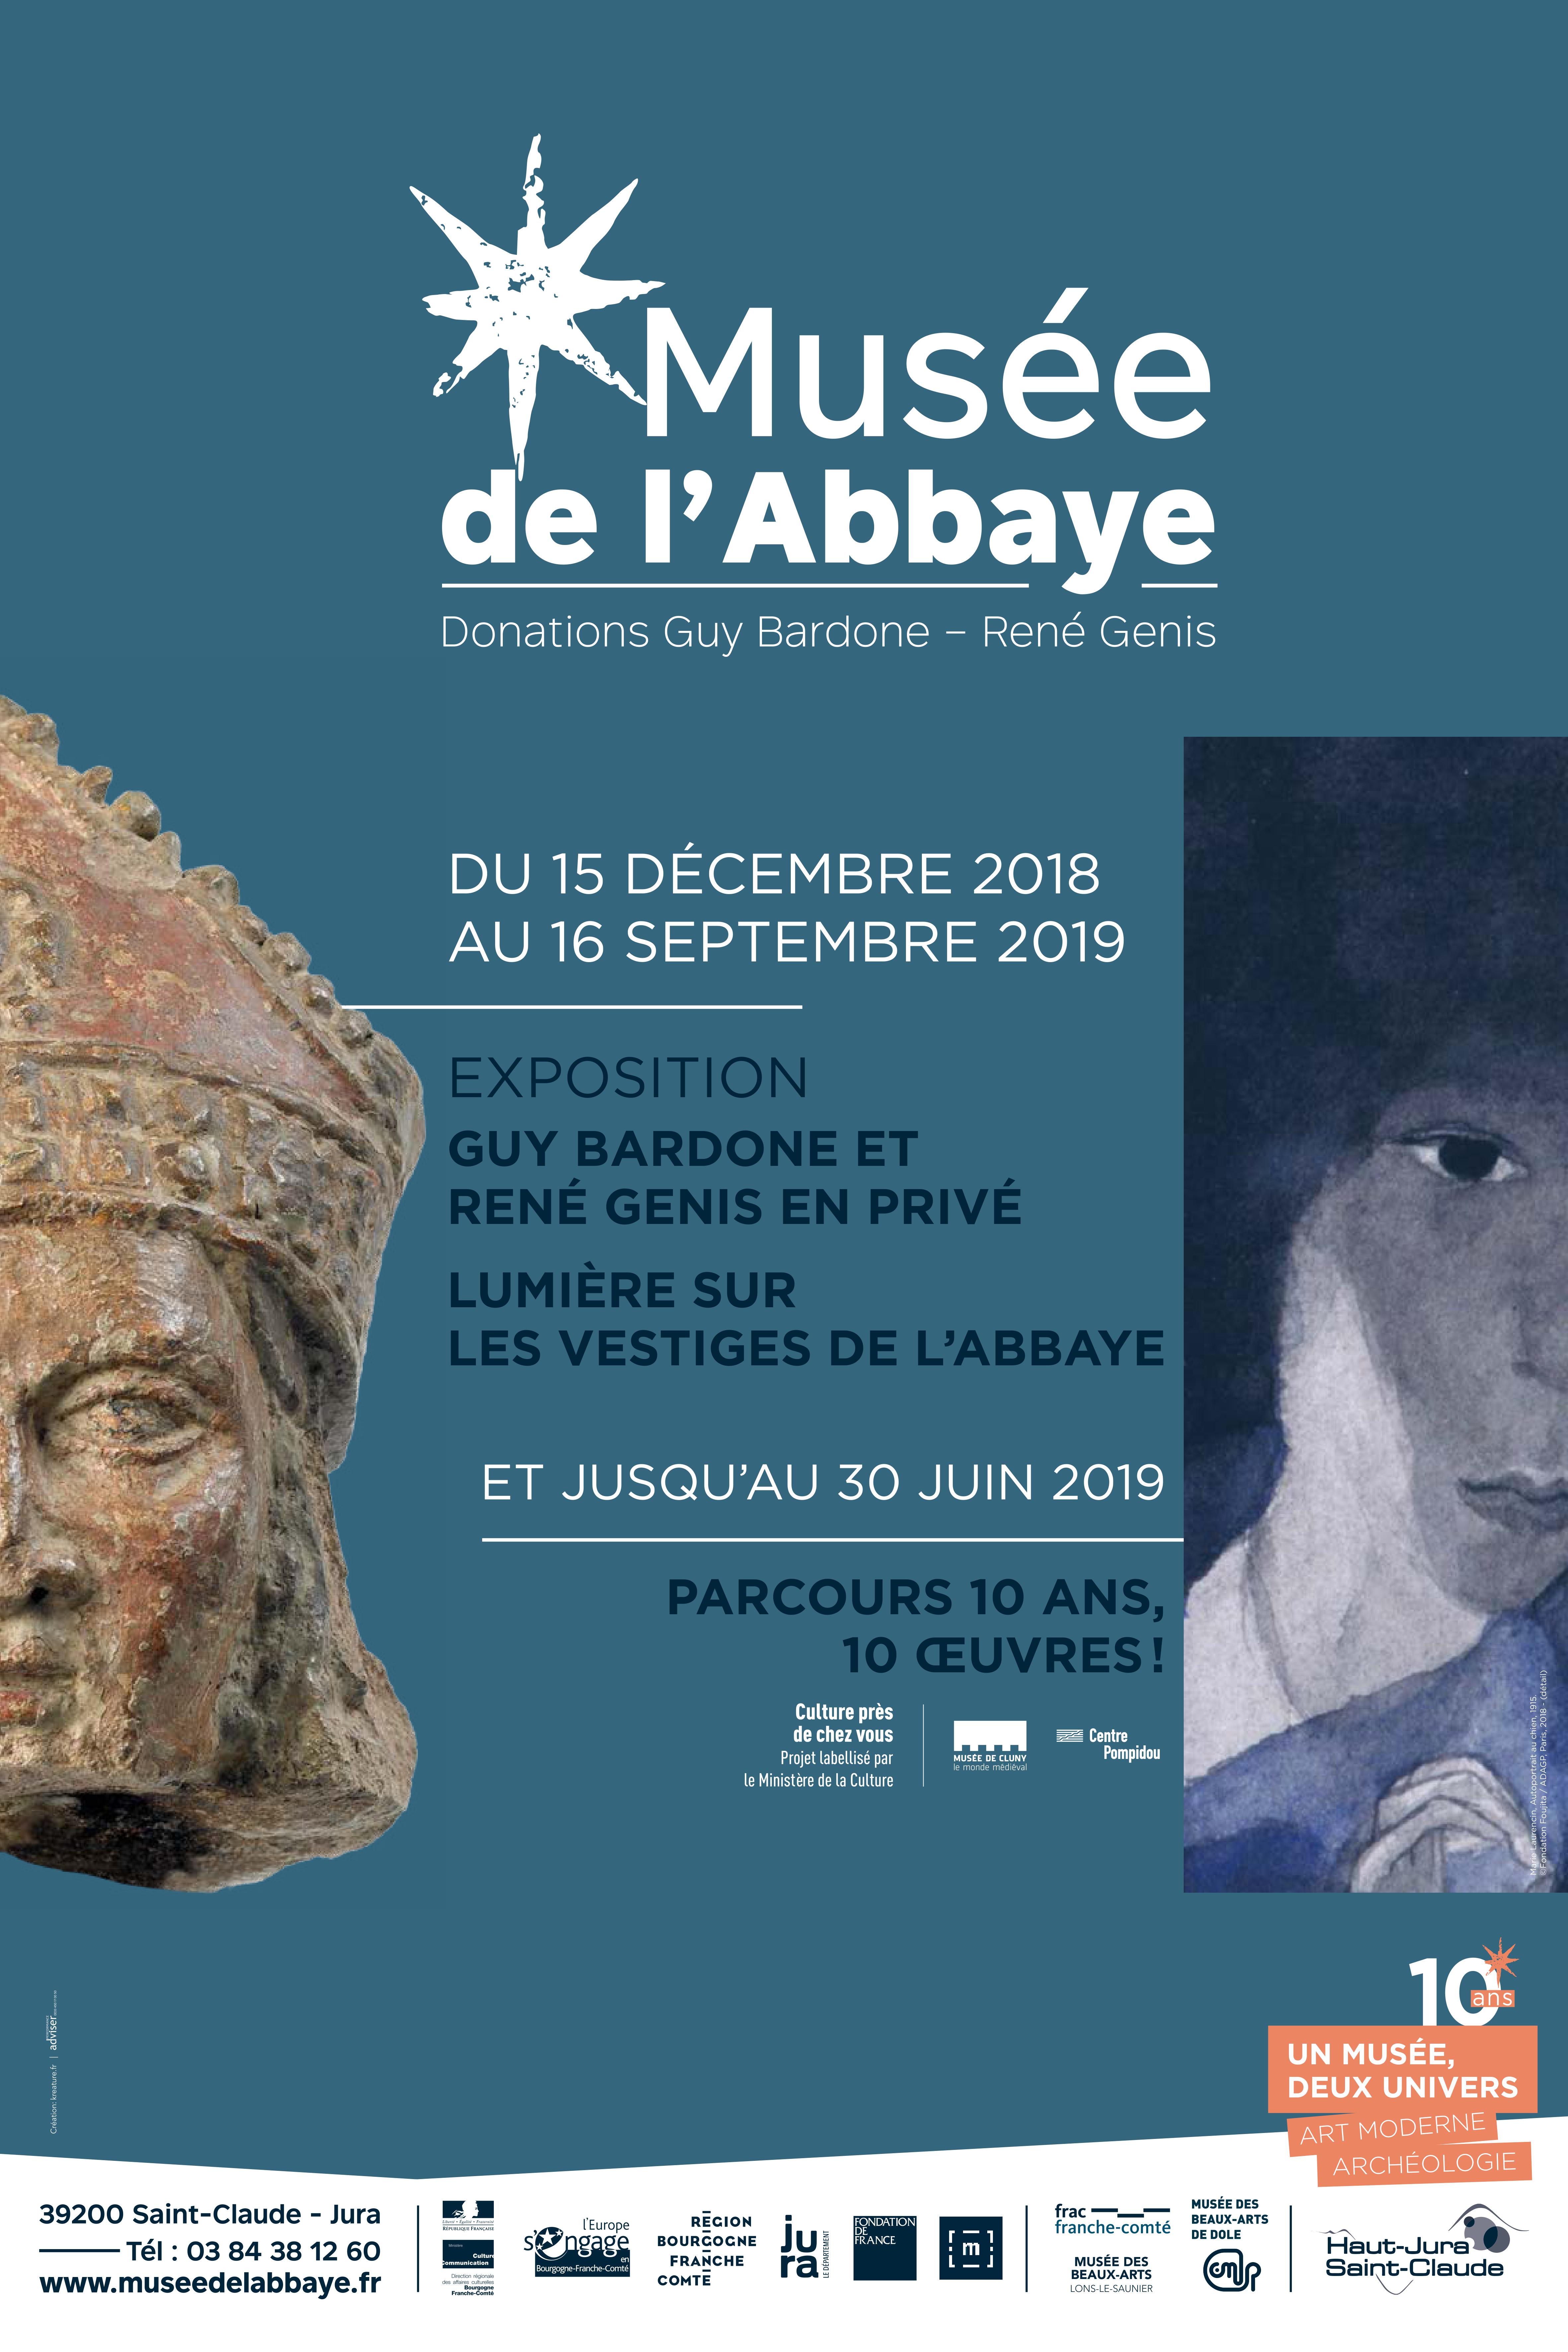 Exposition 10 ans
Guy Bardone et René Genis en privé
Lumière sur les vestiges de l'Abbaye